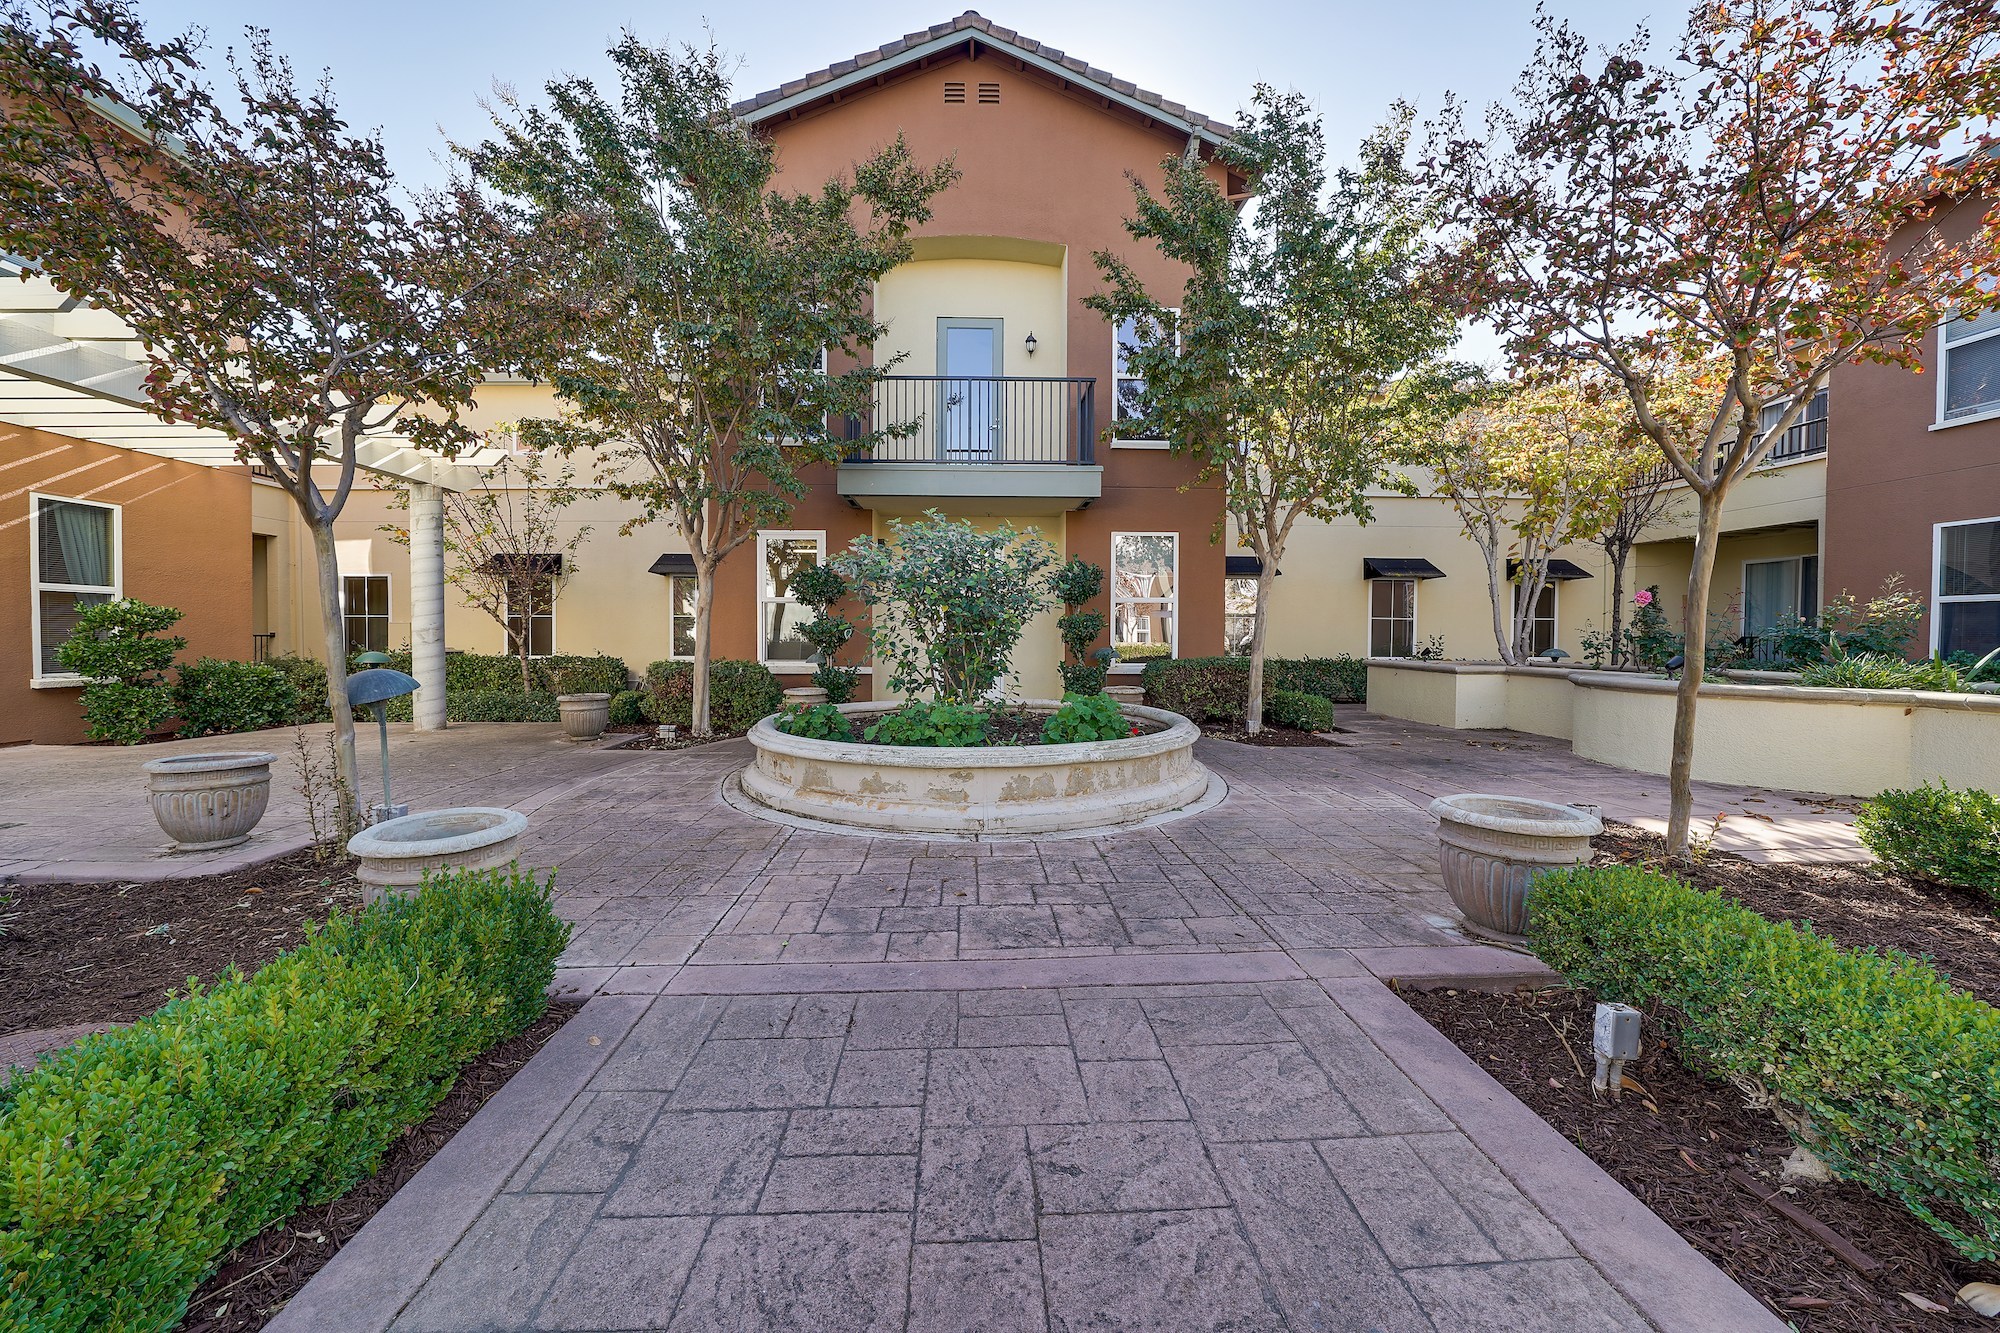 Security Properties and Pacific Life Acquire 118-Unit Monte Vista Senior Apartment Community Located in San Jose, California